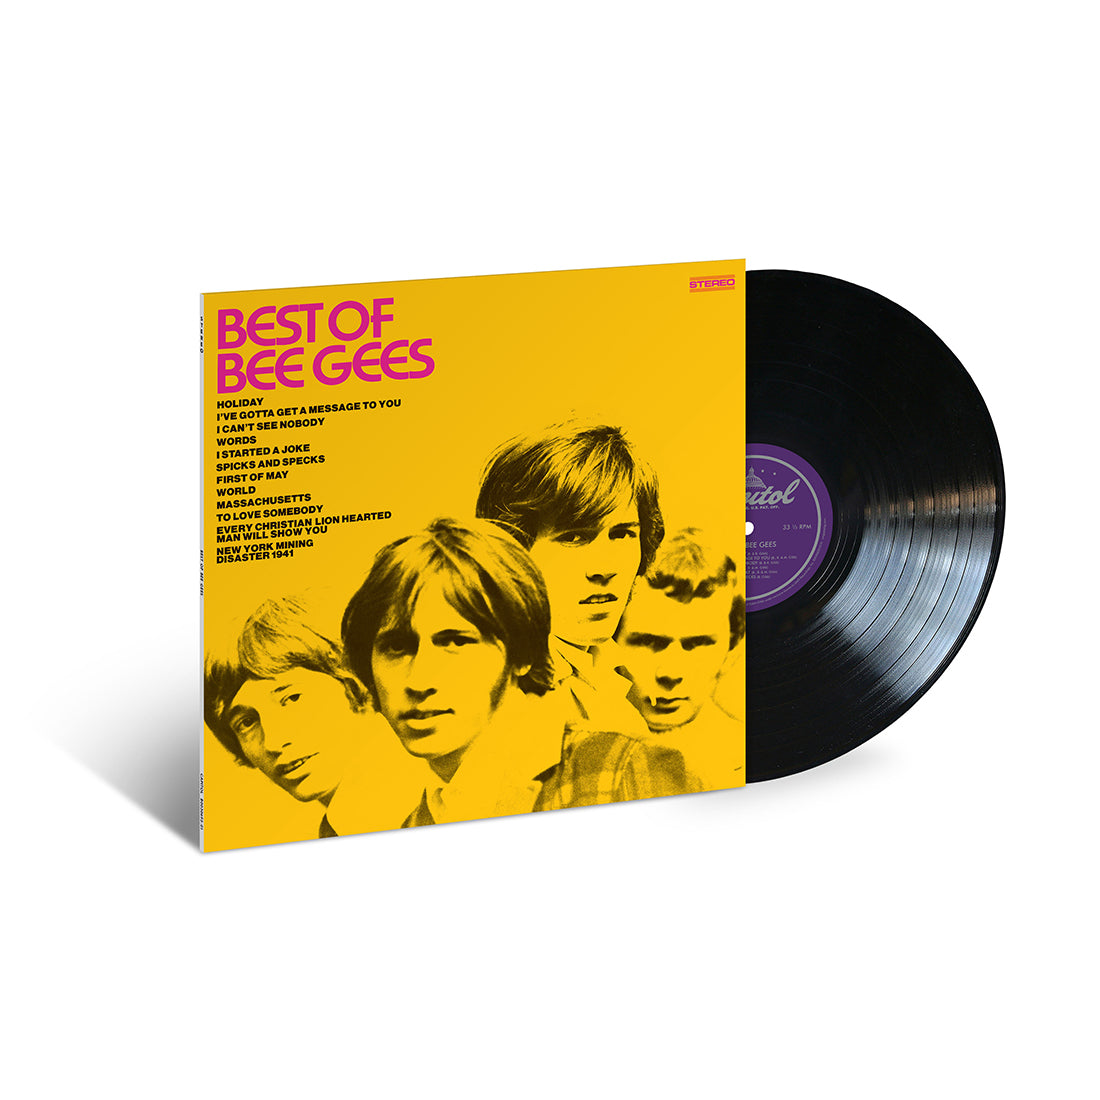 Bee Gees - Best Of Bee Gees: Vinyl LP